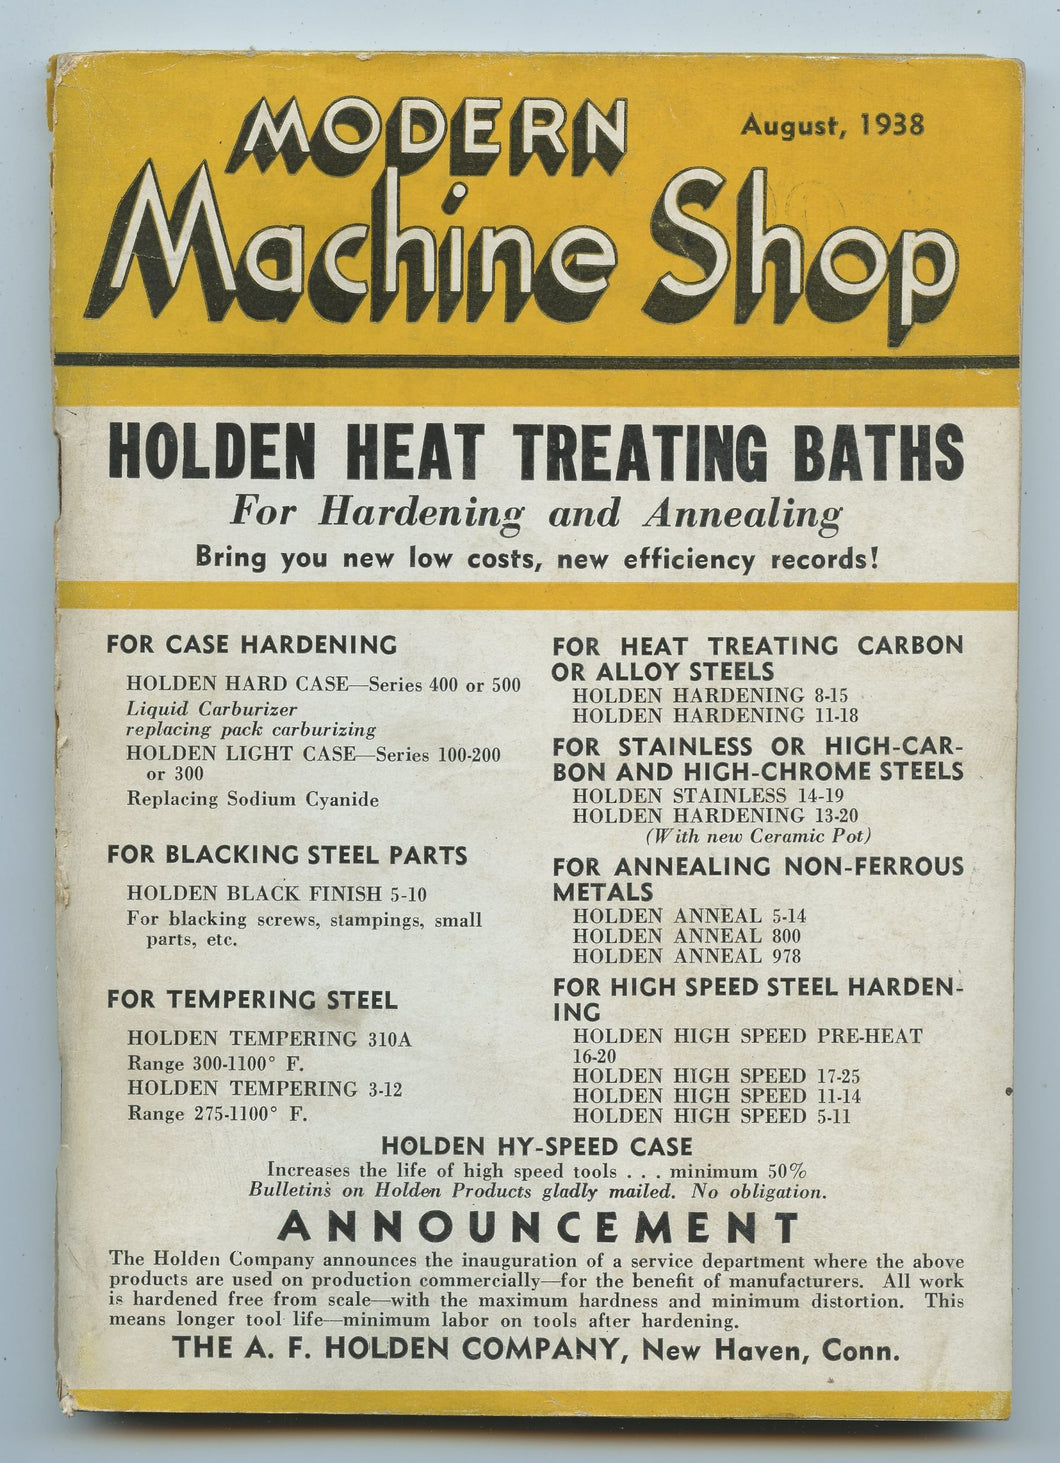 Modern Machine Shop, August 1938